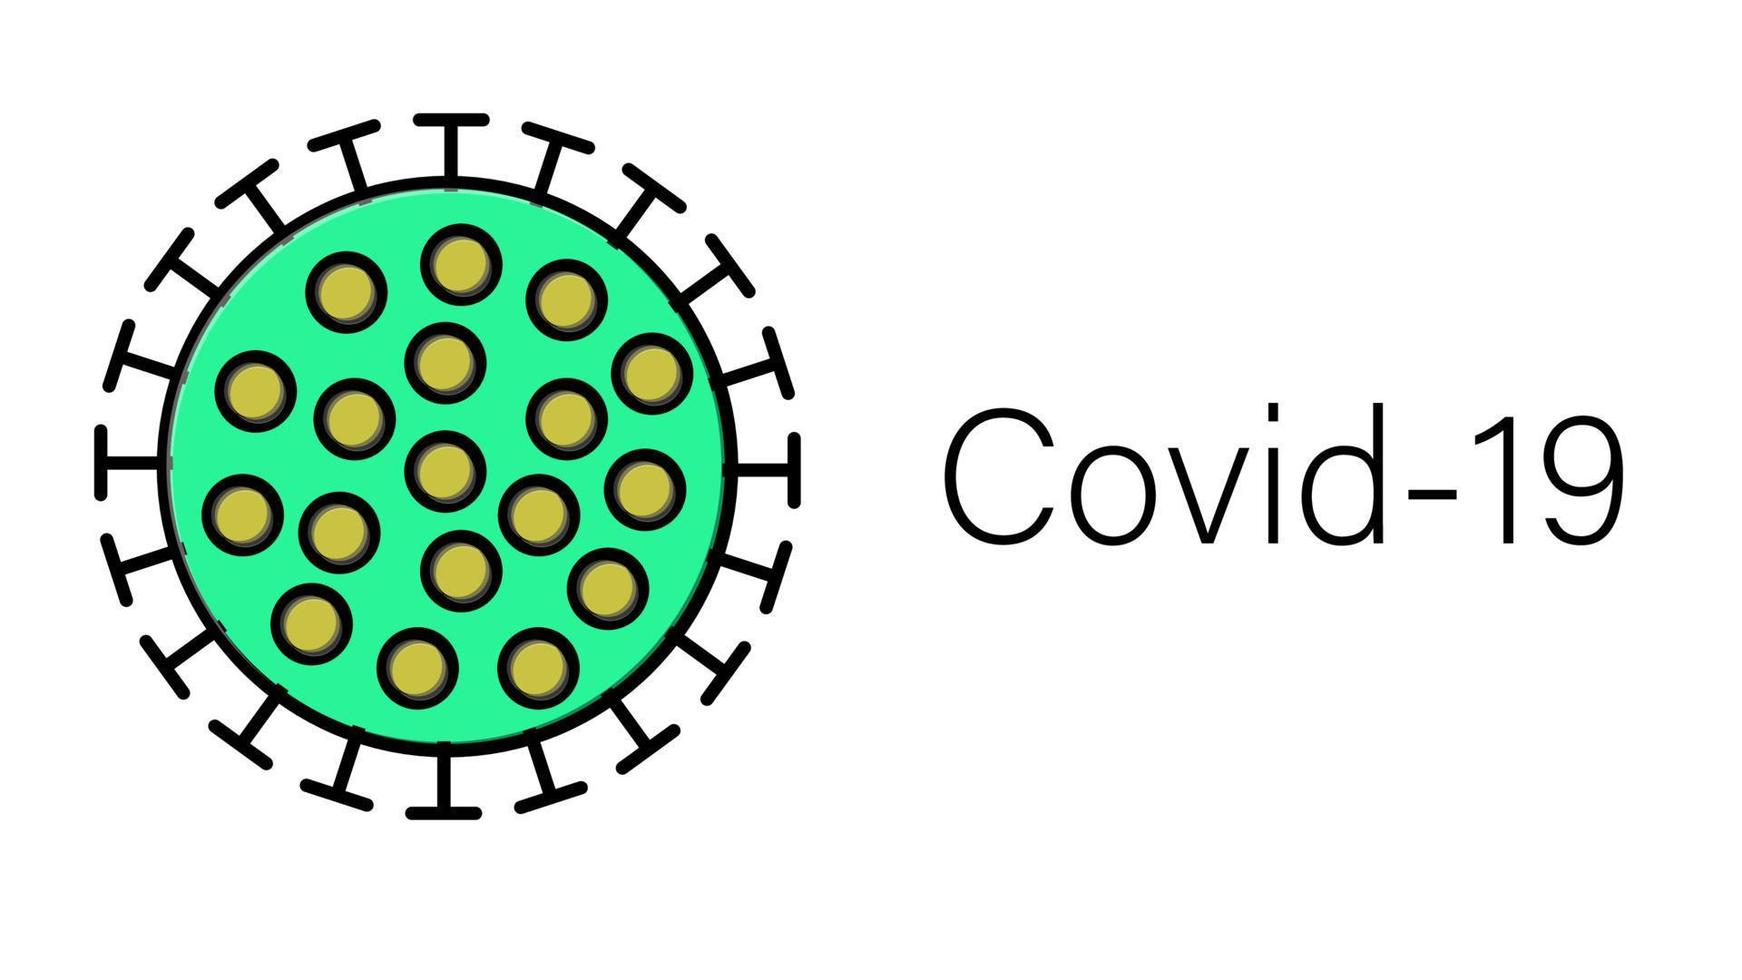 épidémie de pandémie de coronavirus respiratoire mortelle infectieuse verte dangereuse, virus microbe covid-19 isolé sur fond blanc vecteur